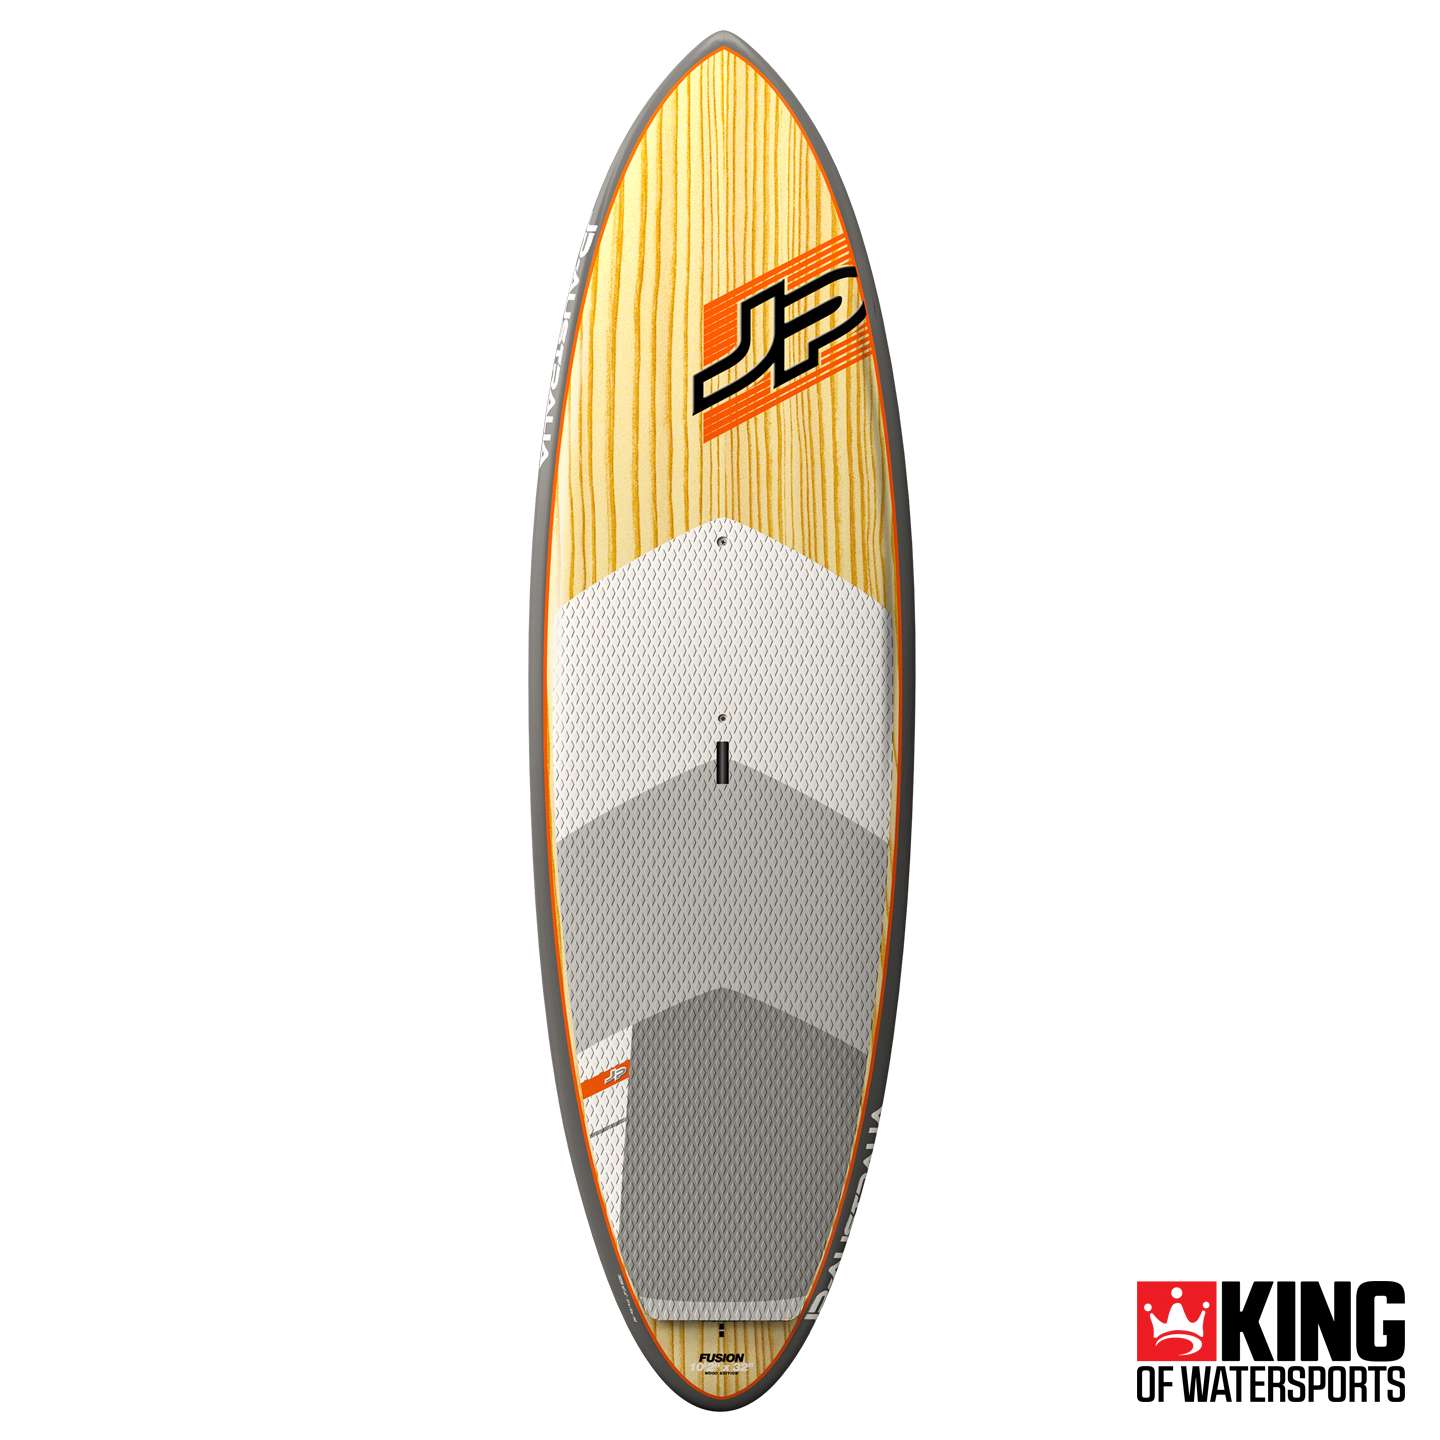 intern Grootte Het beste JP Fusion Wood 10'2 SUP Board 2018 | King of Watersports